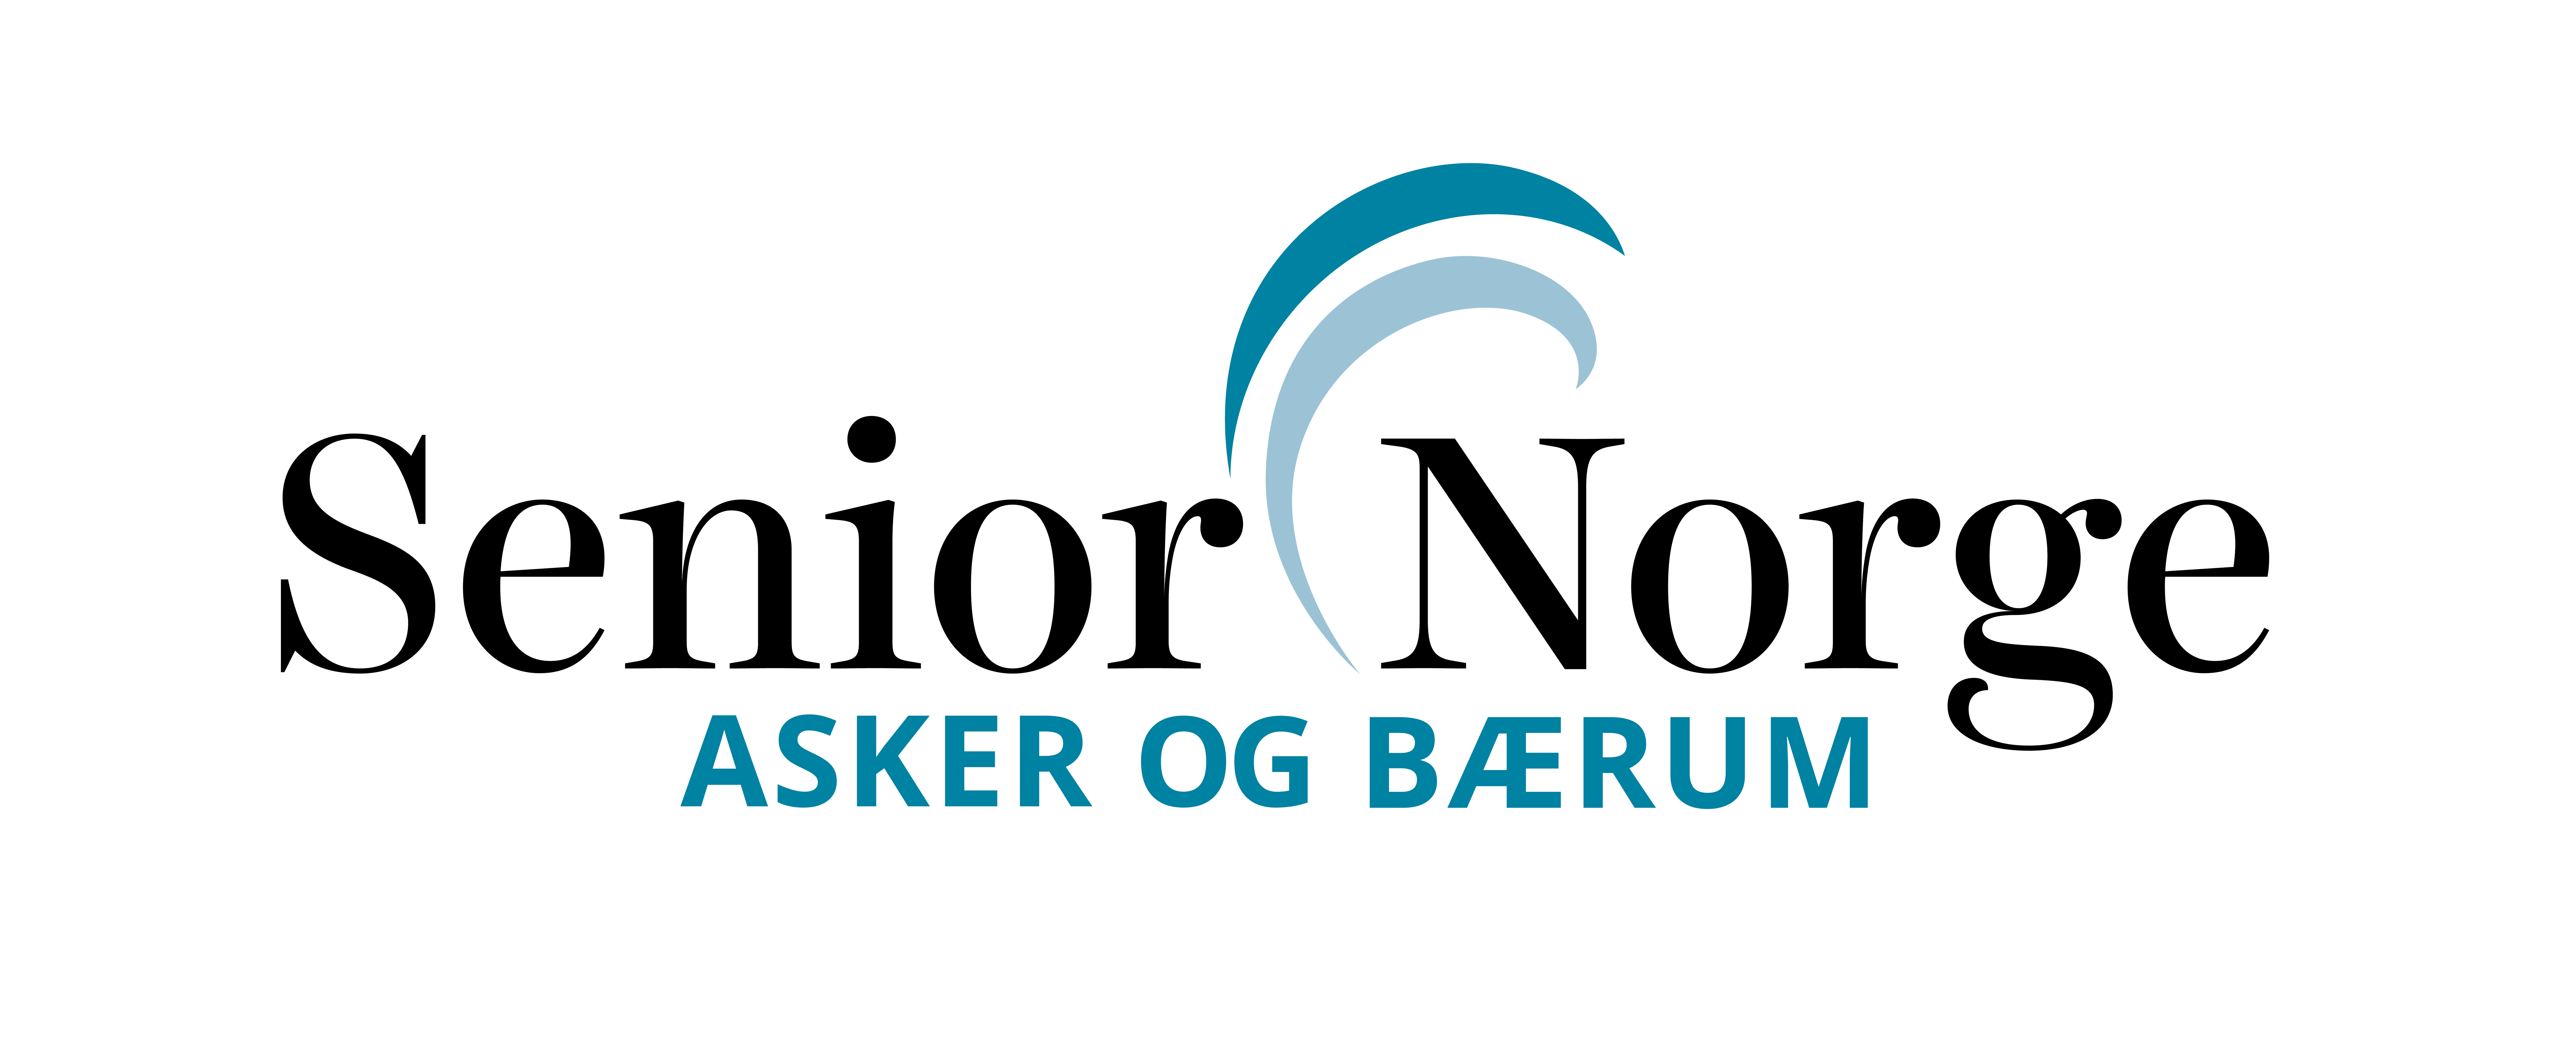 Senior Norge Asker og Bærum logo